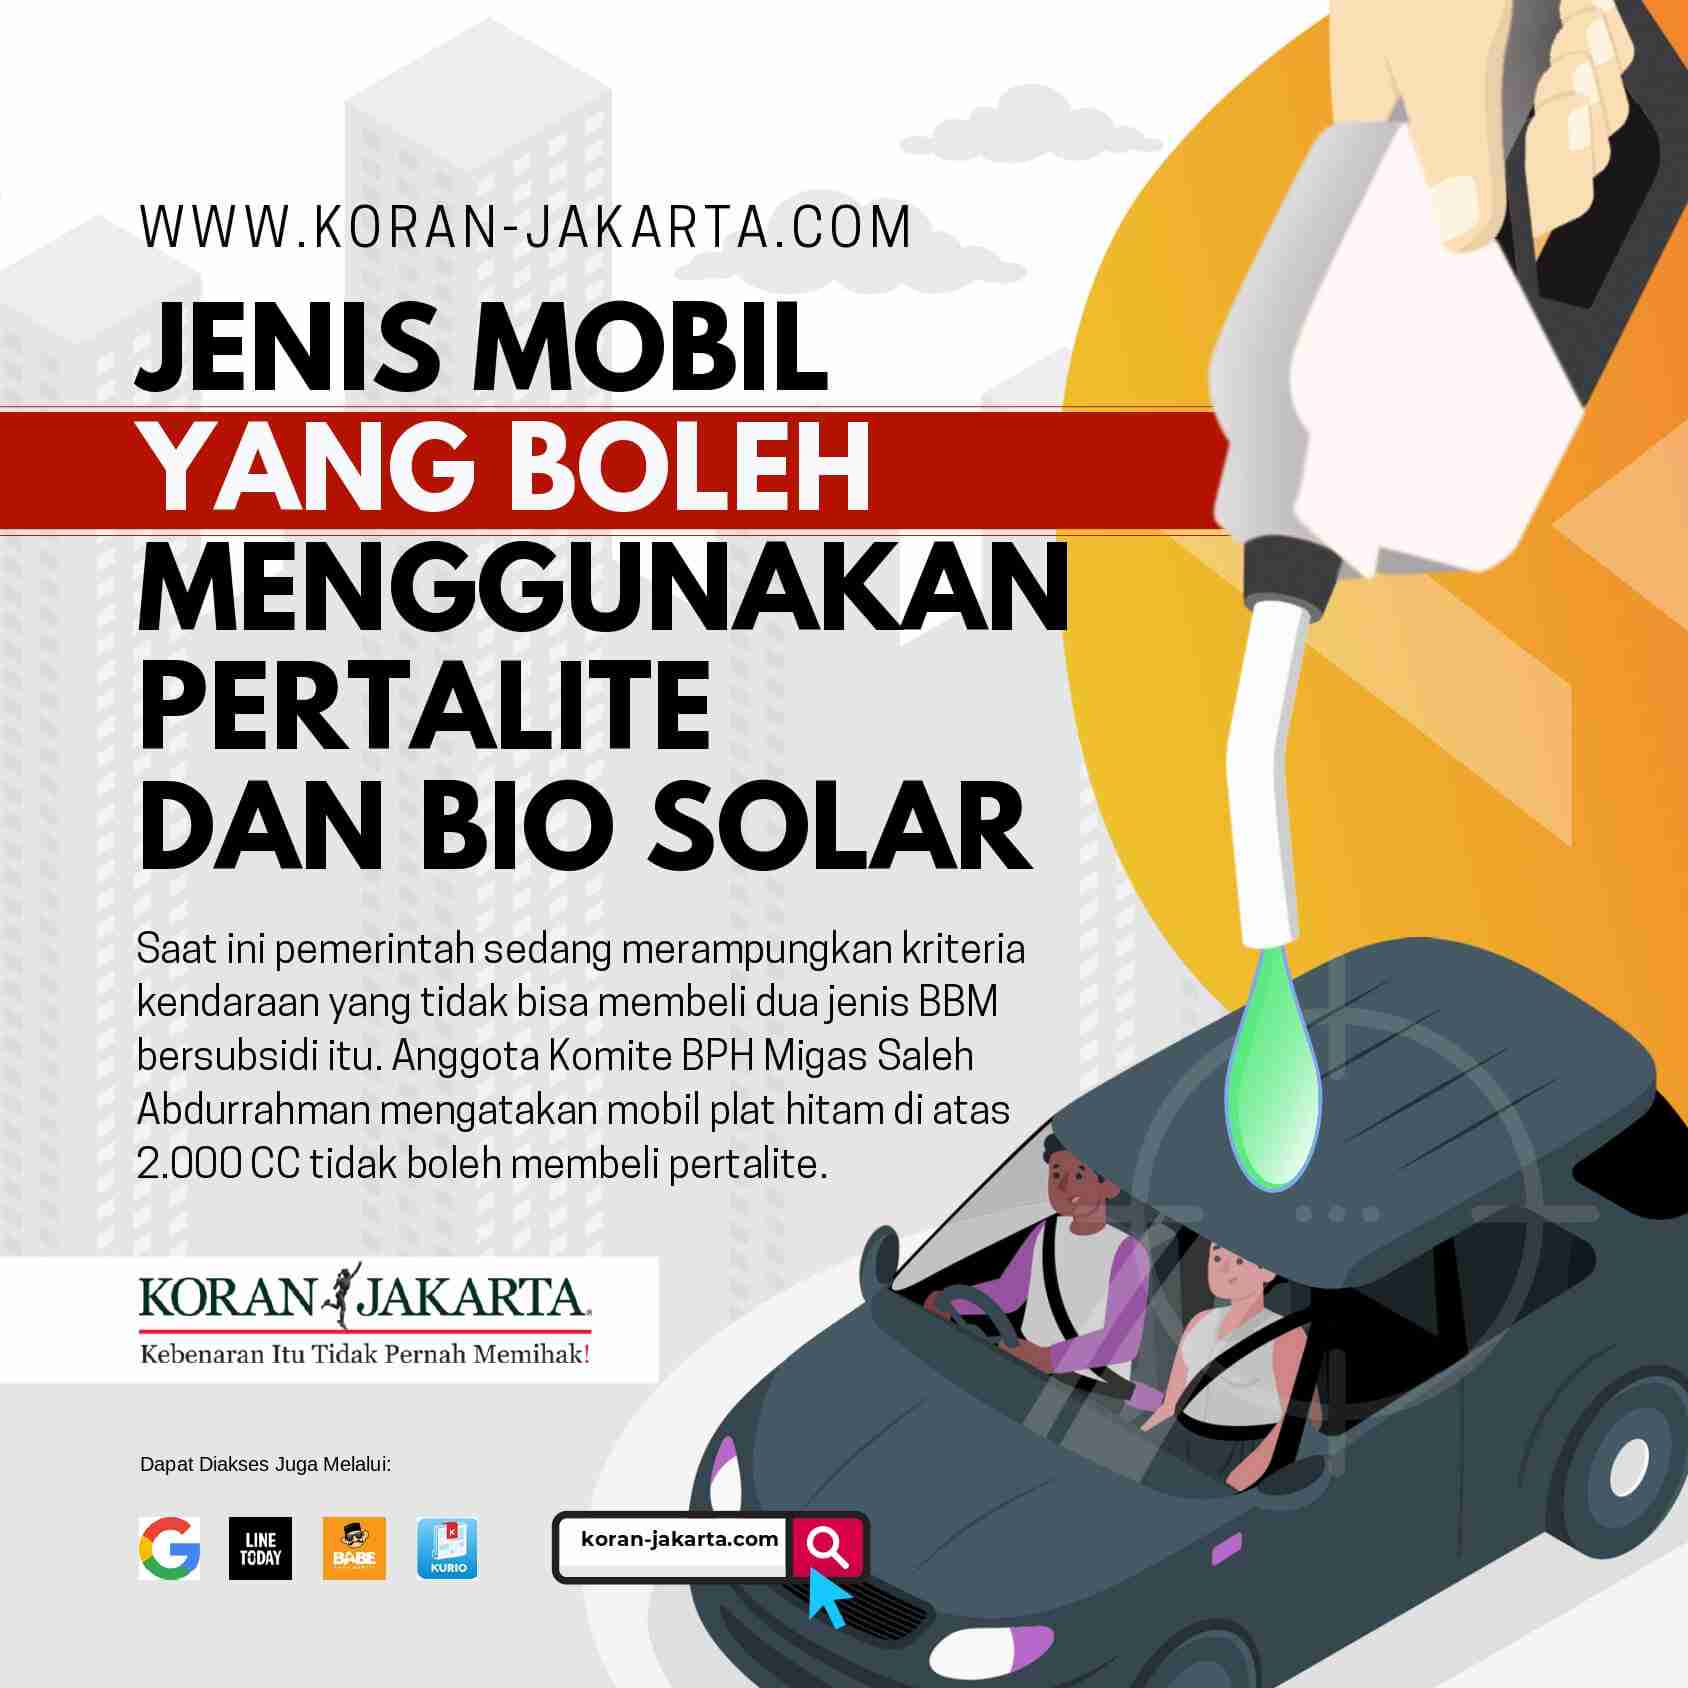 Jenis Mobil yang Boleh Menggunakan Pertalite dan Bio Solar